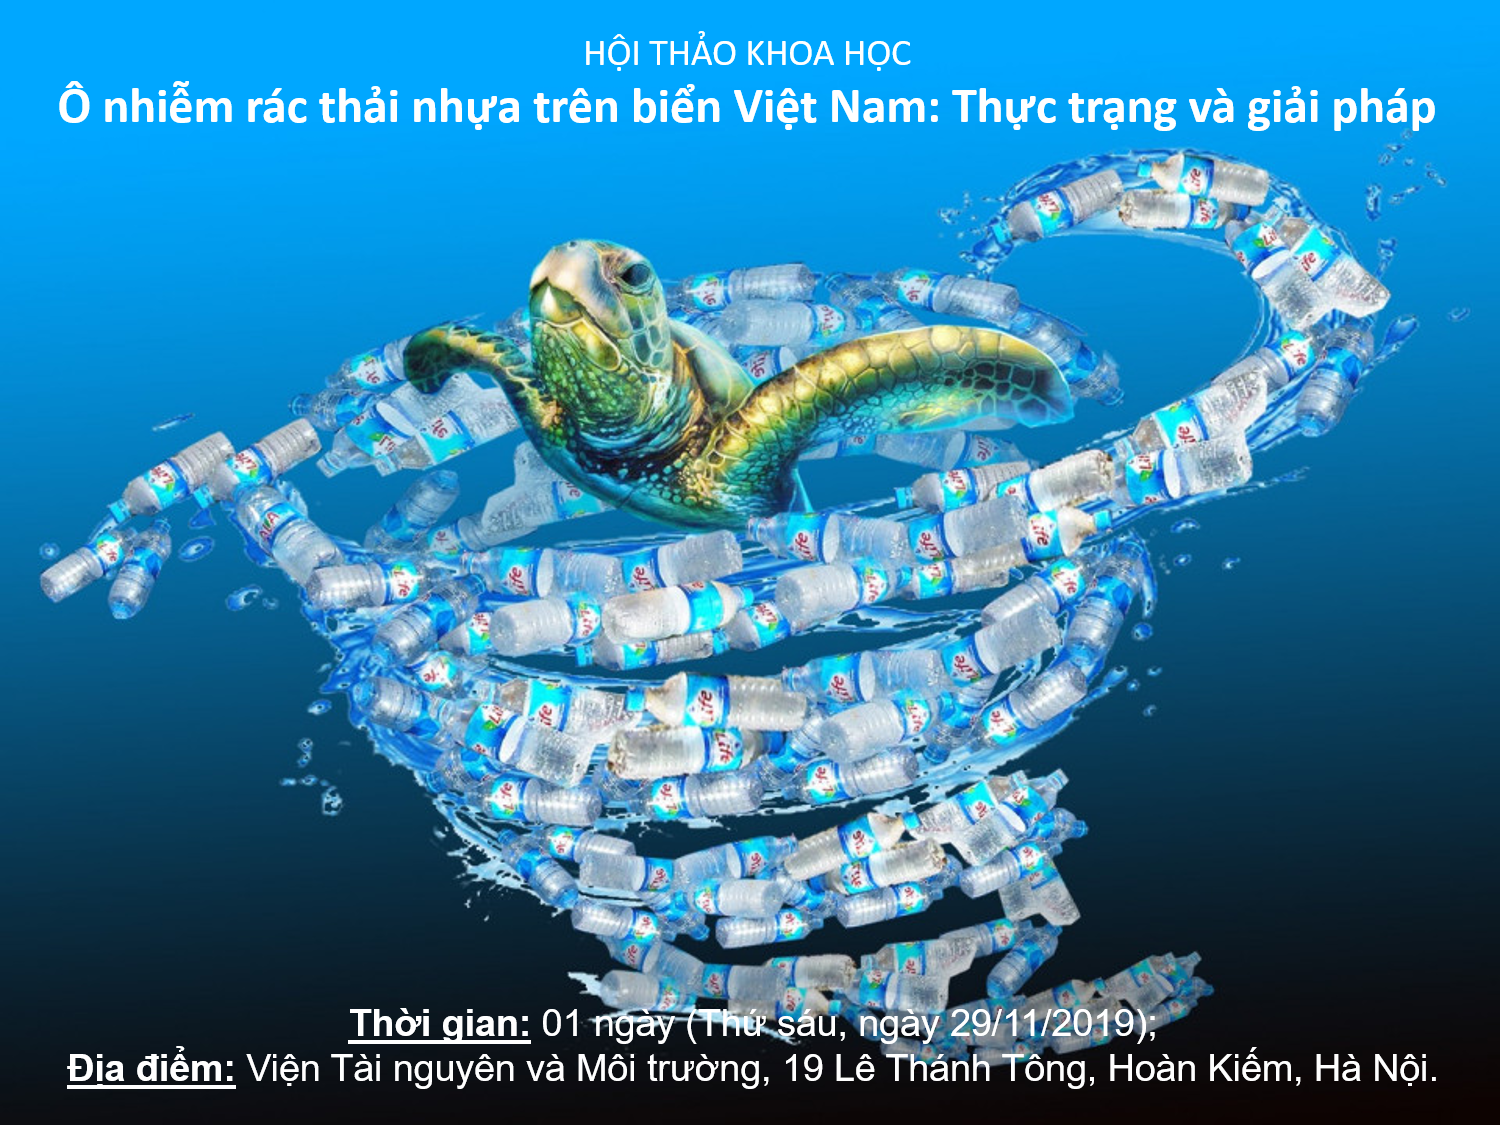 Thông báo số 1 về việc tổ chức Hội thảo khoa học Quốc gia “Ô nhiễm rác thải nhựa trên biển Việt Nam: Thực trạng và giải pháp